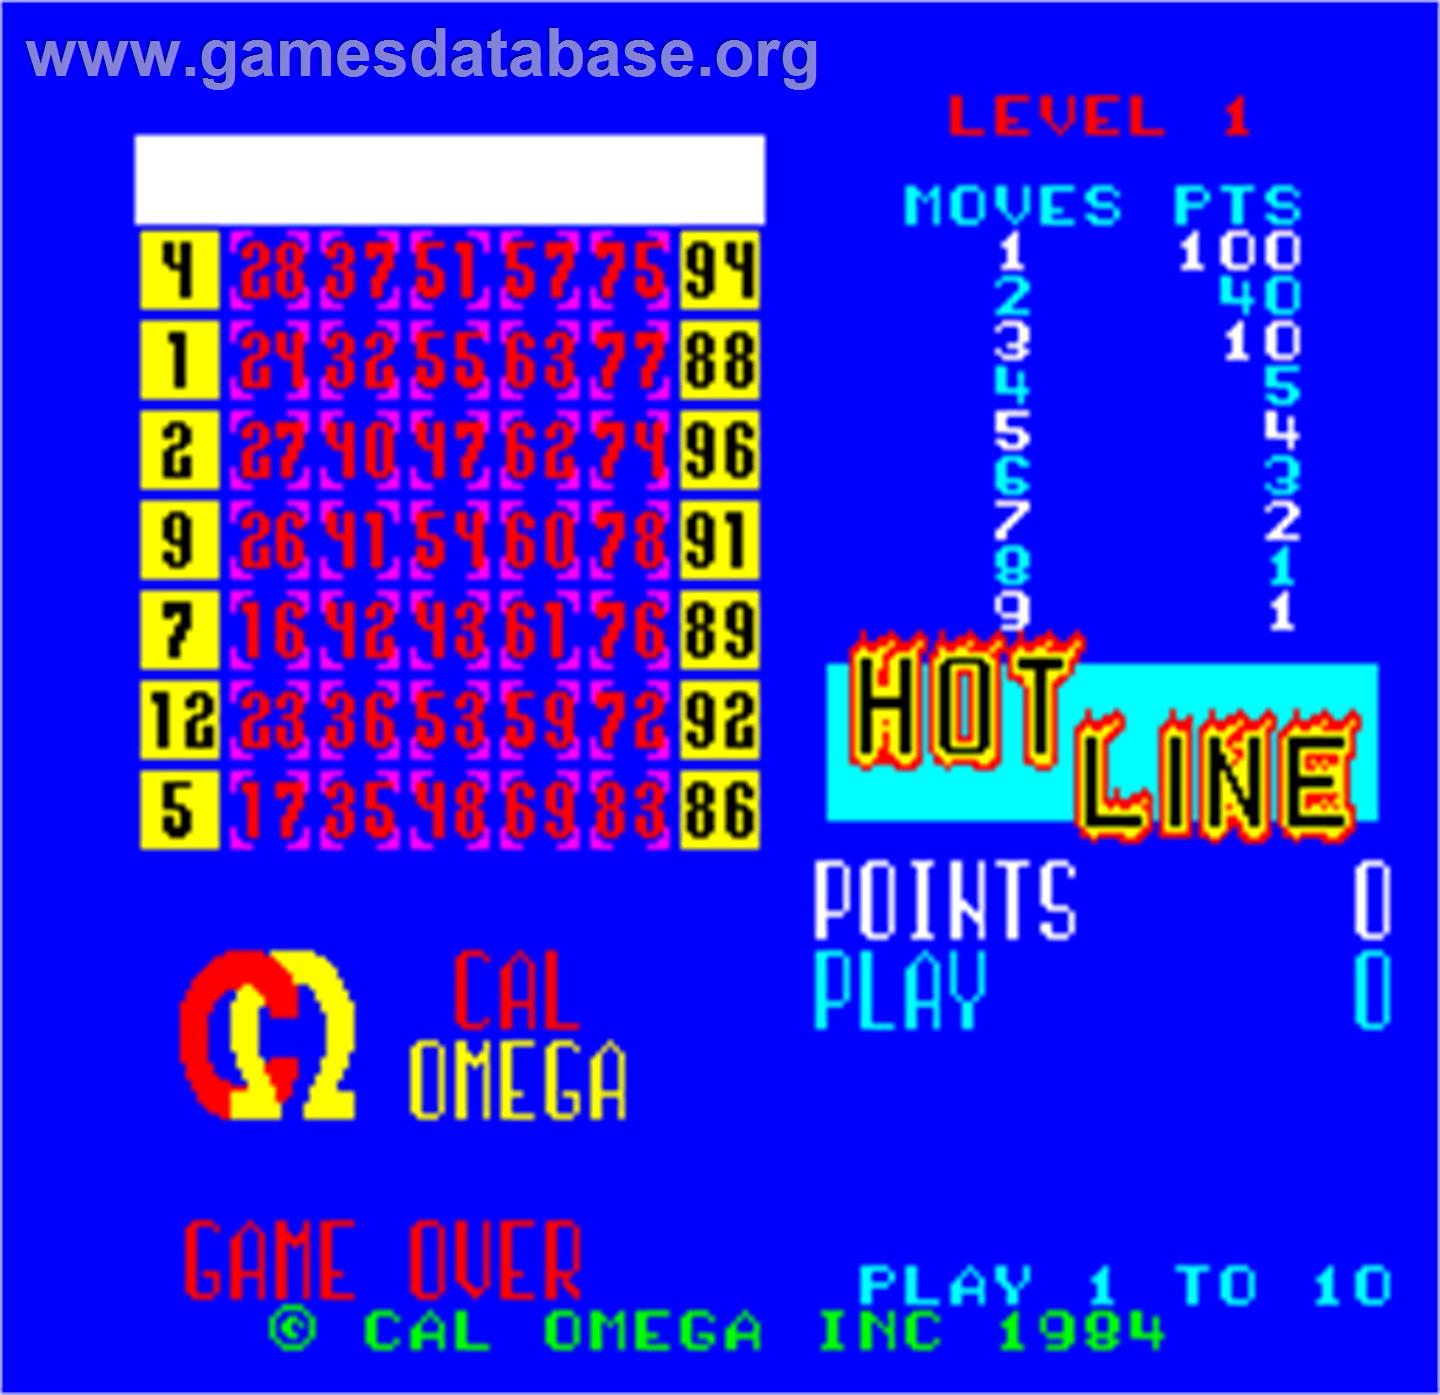 Cal Omega - Game 23.6 - Arcade - Artwork - Title Screen